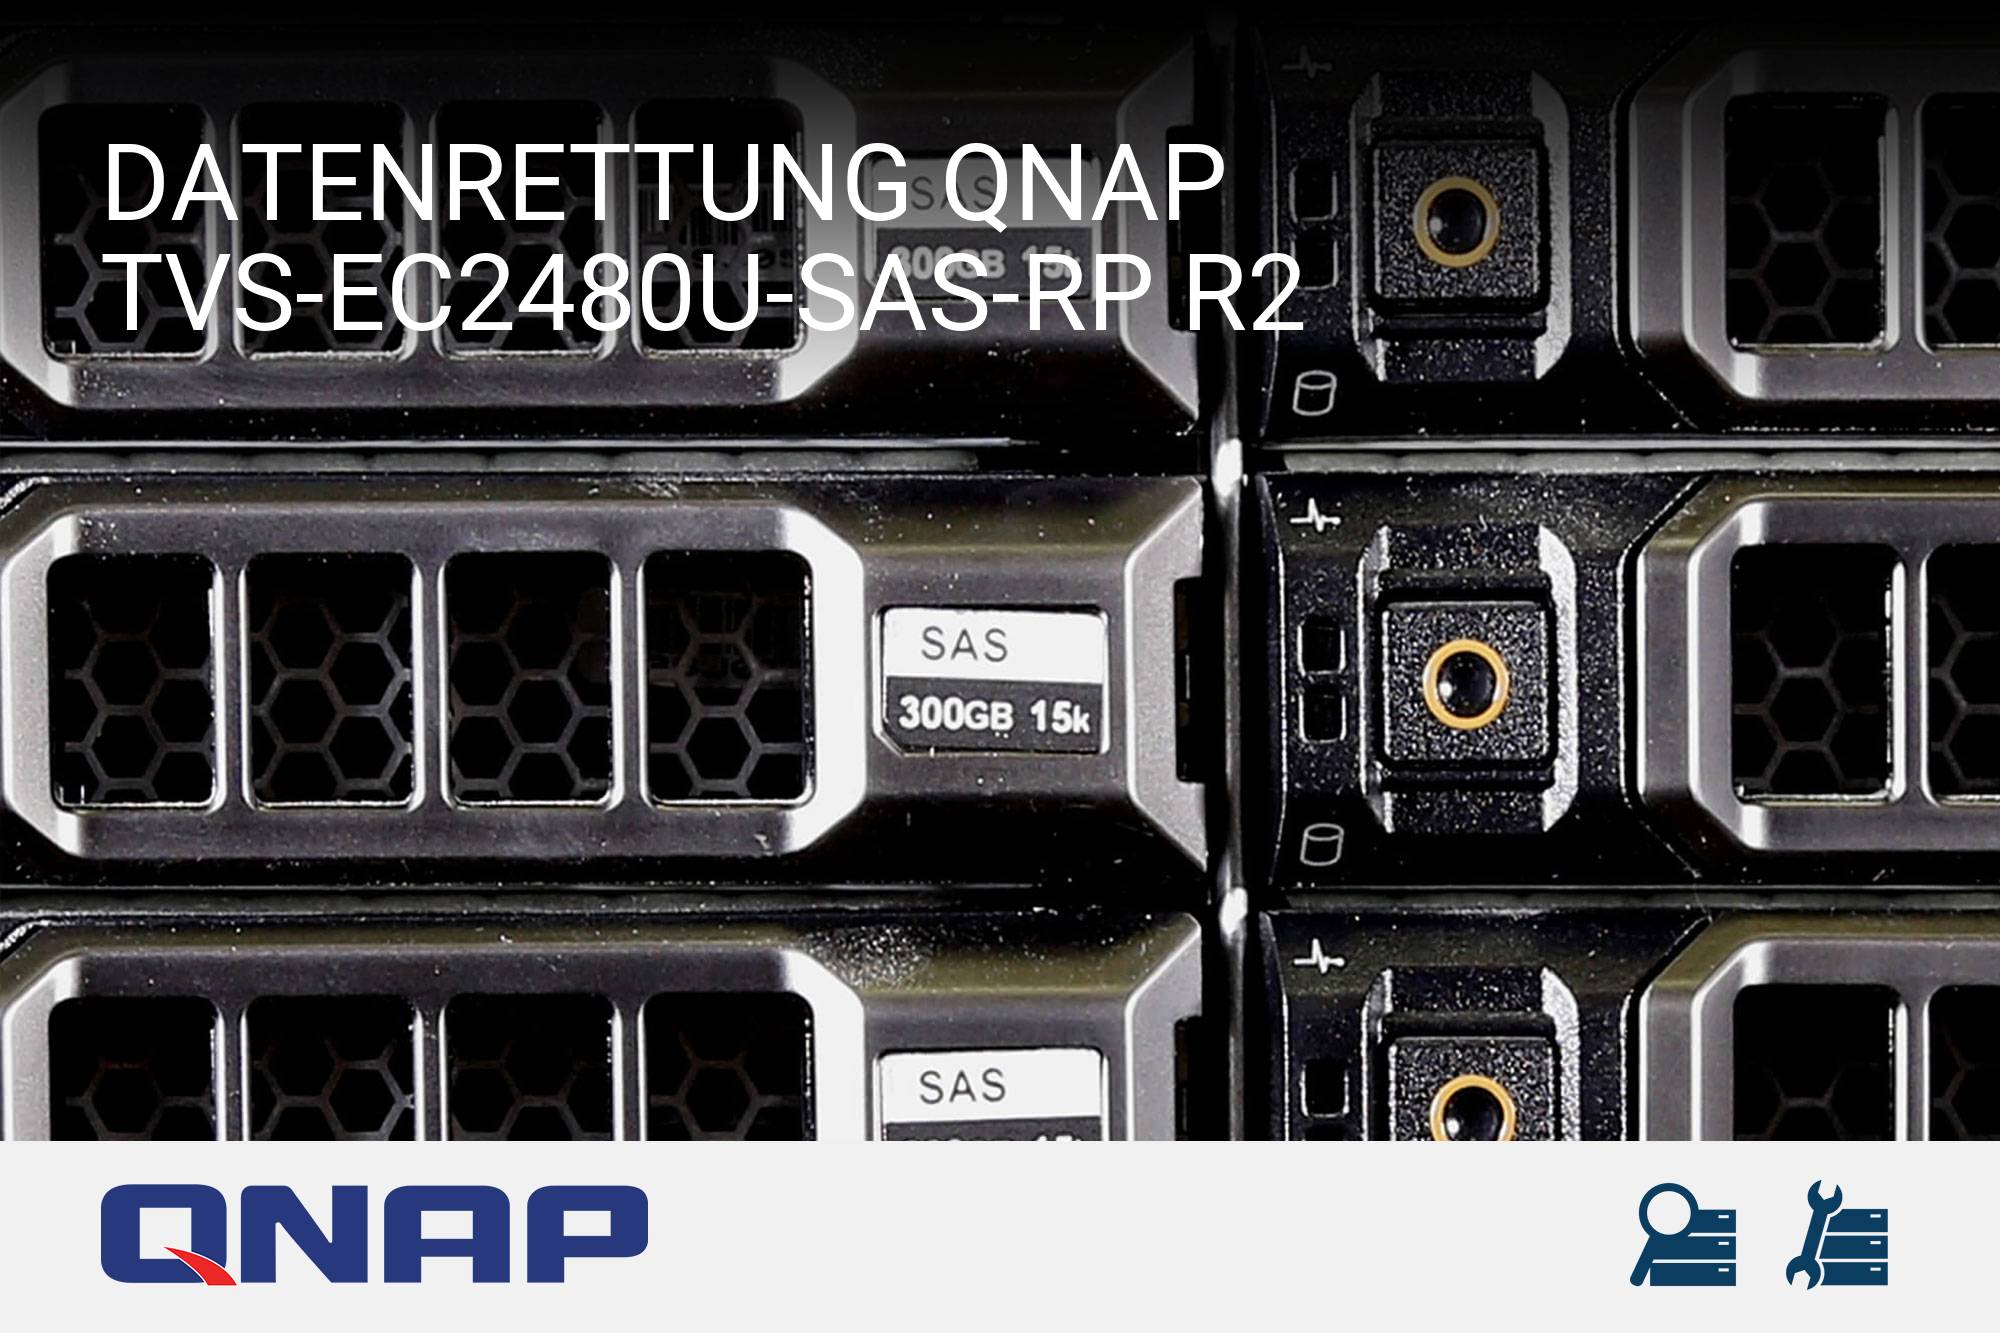 QNAP TVS-EC2480U-SAS-RP R2